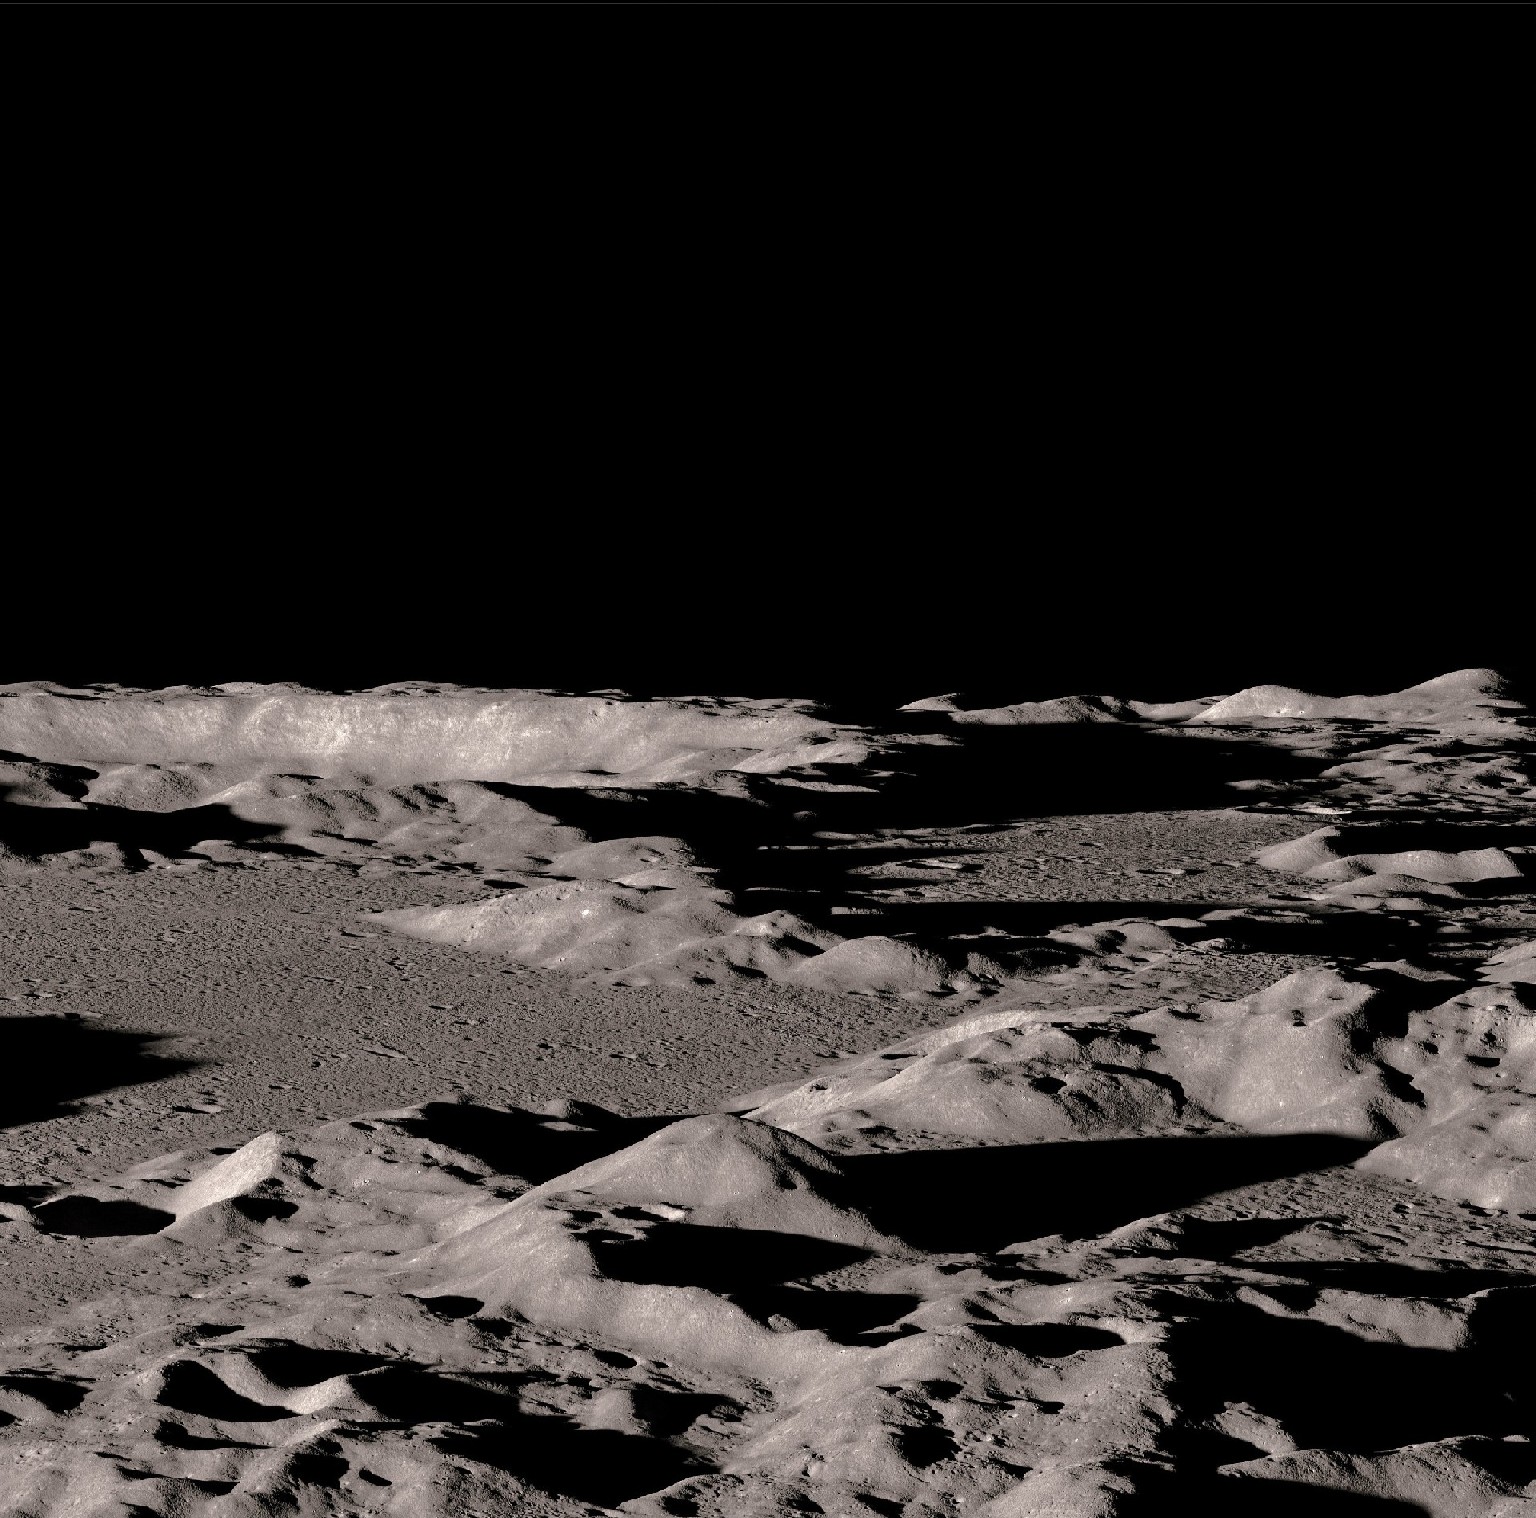 Planície lunar fotografada pela Reconnaissance Orbiter em 2009